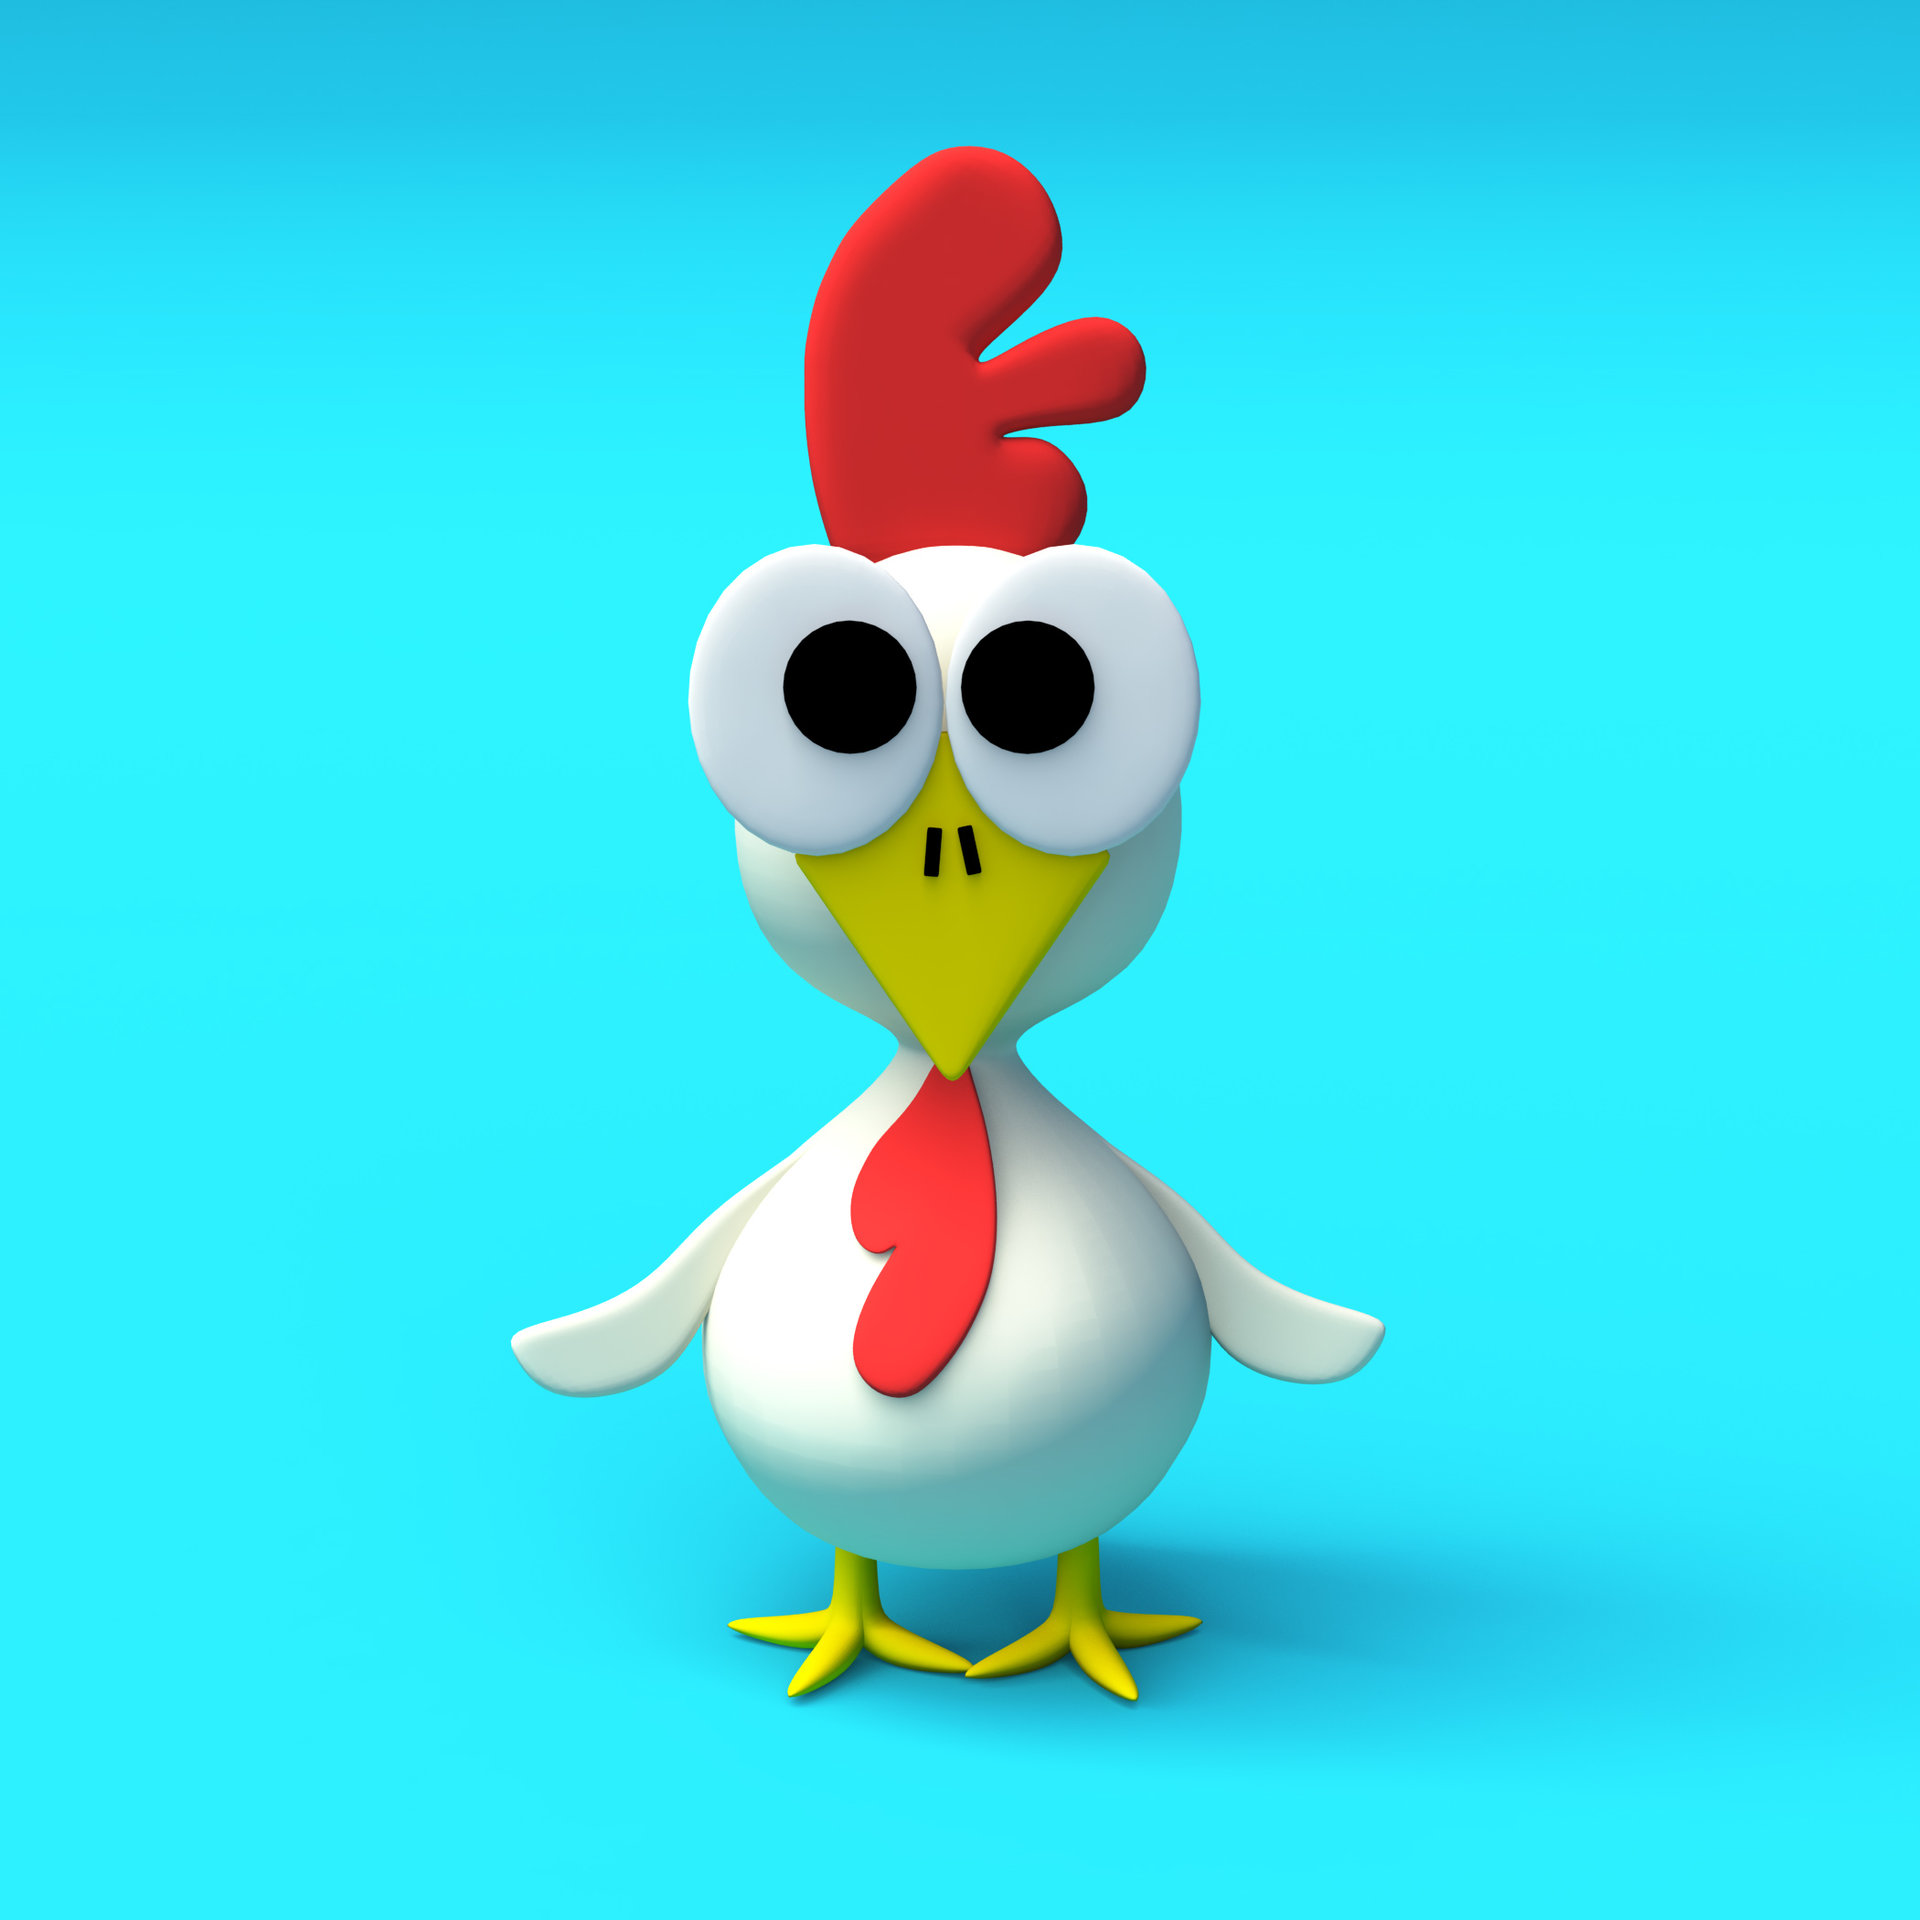 ArtStation - Cute Chicken